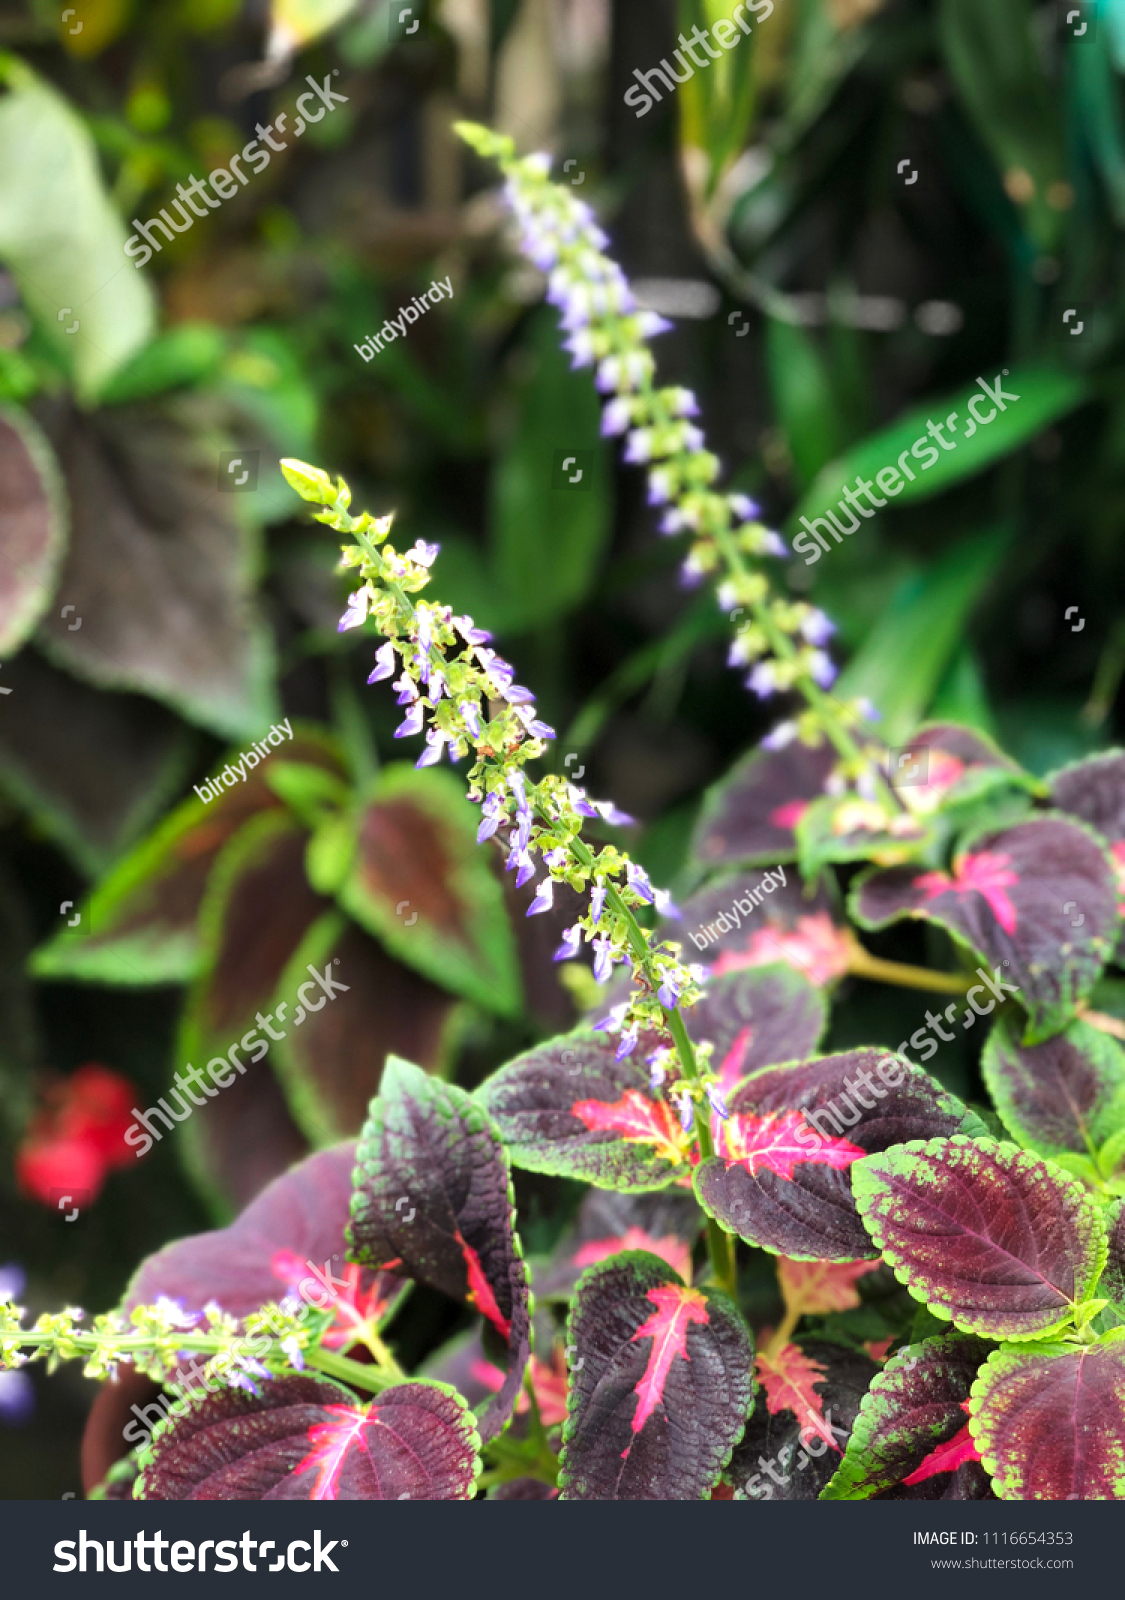 Coleus Blumei Plant Texture Leaves Closeup Nature Stock Image 1116654353